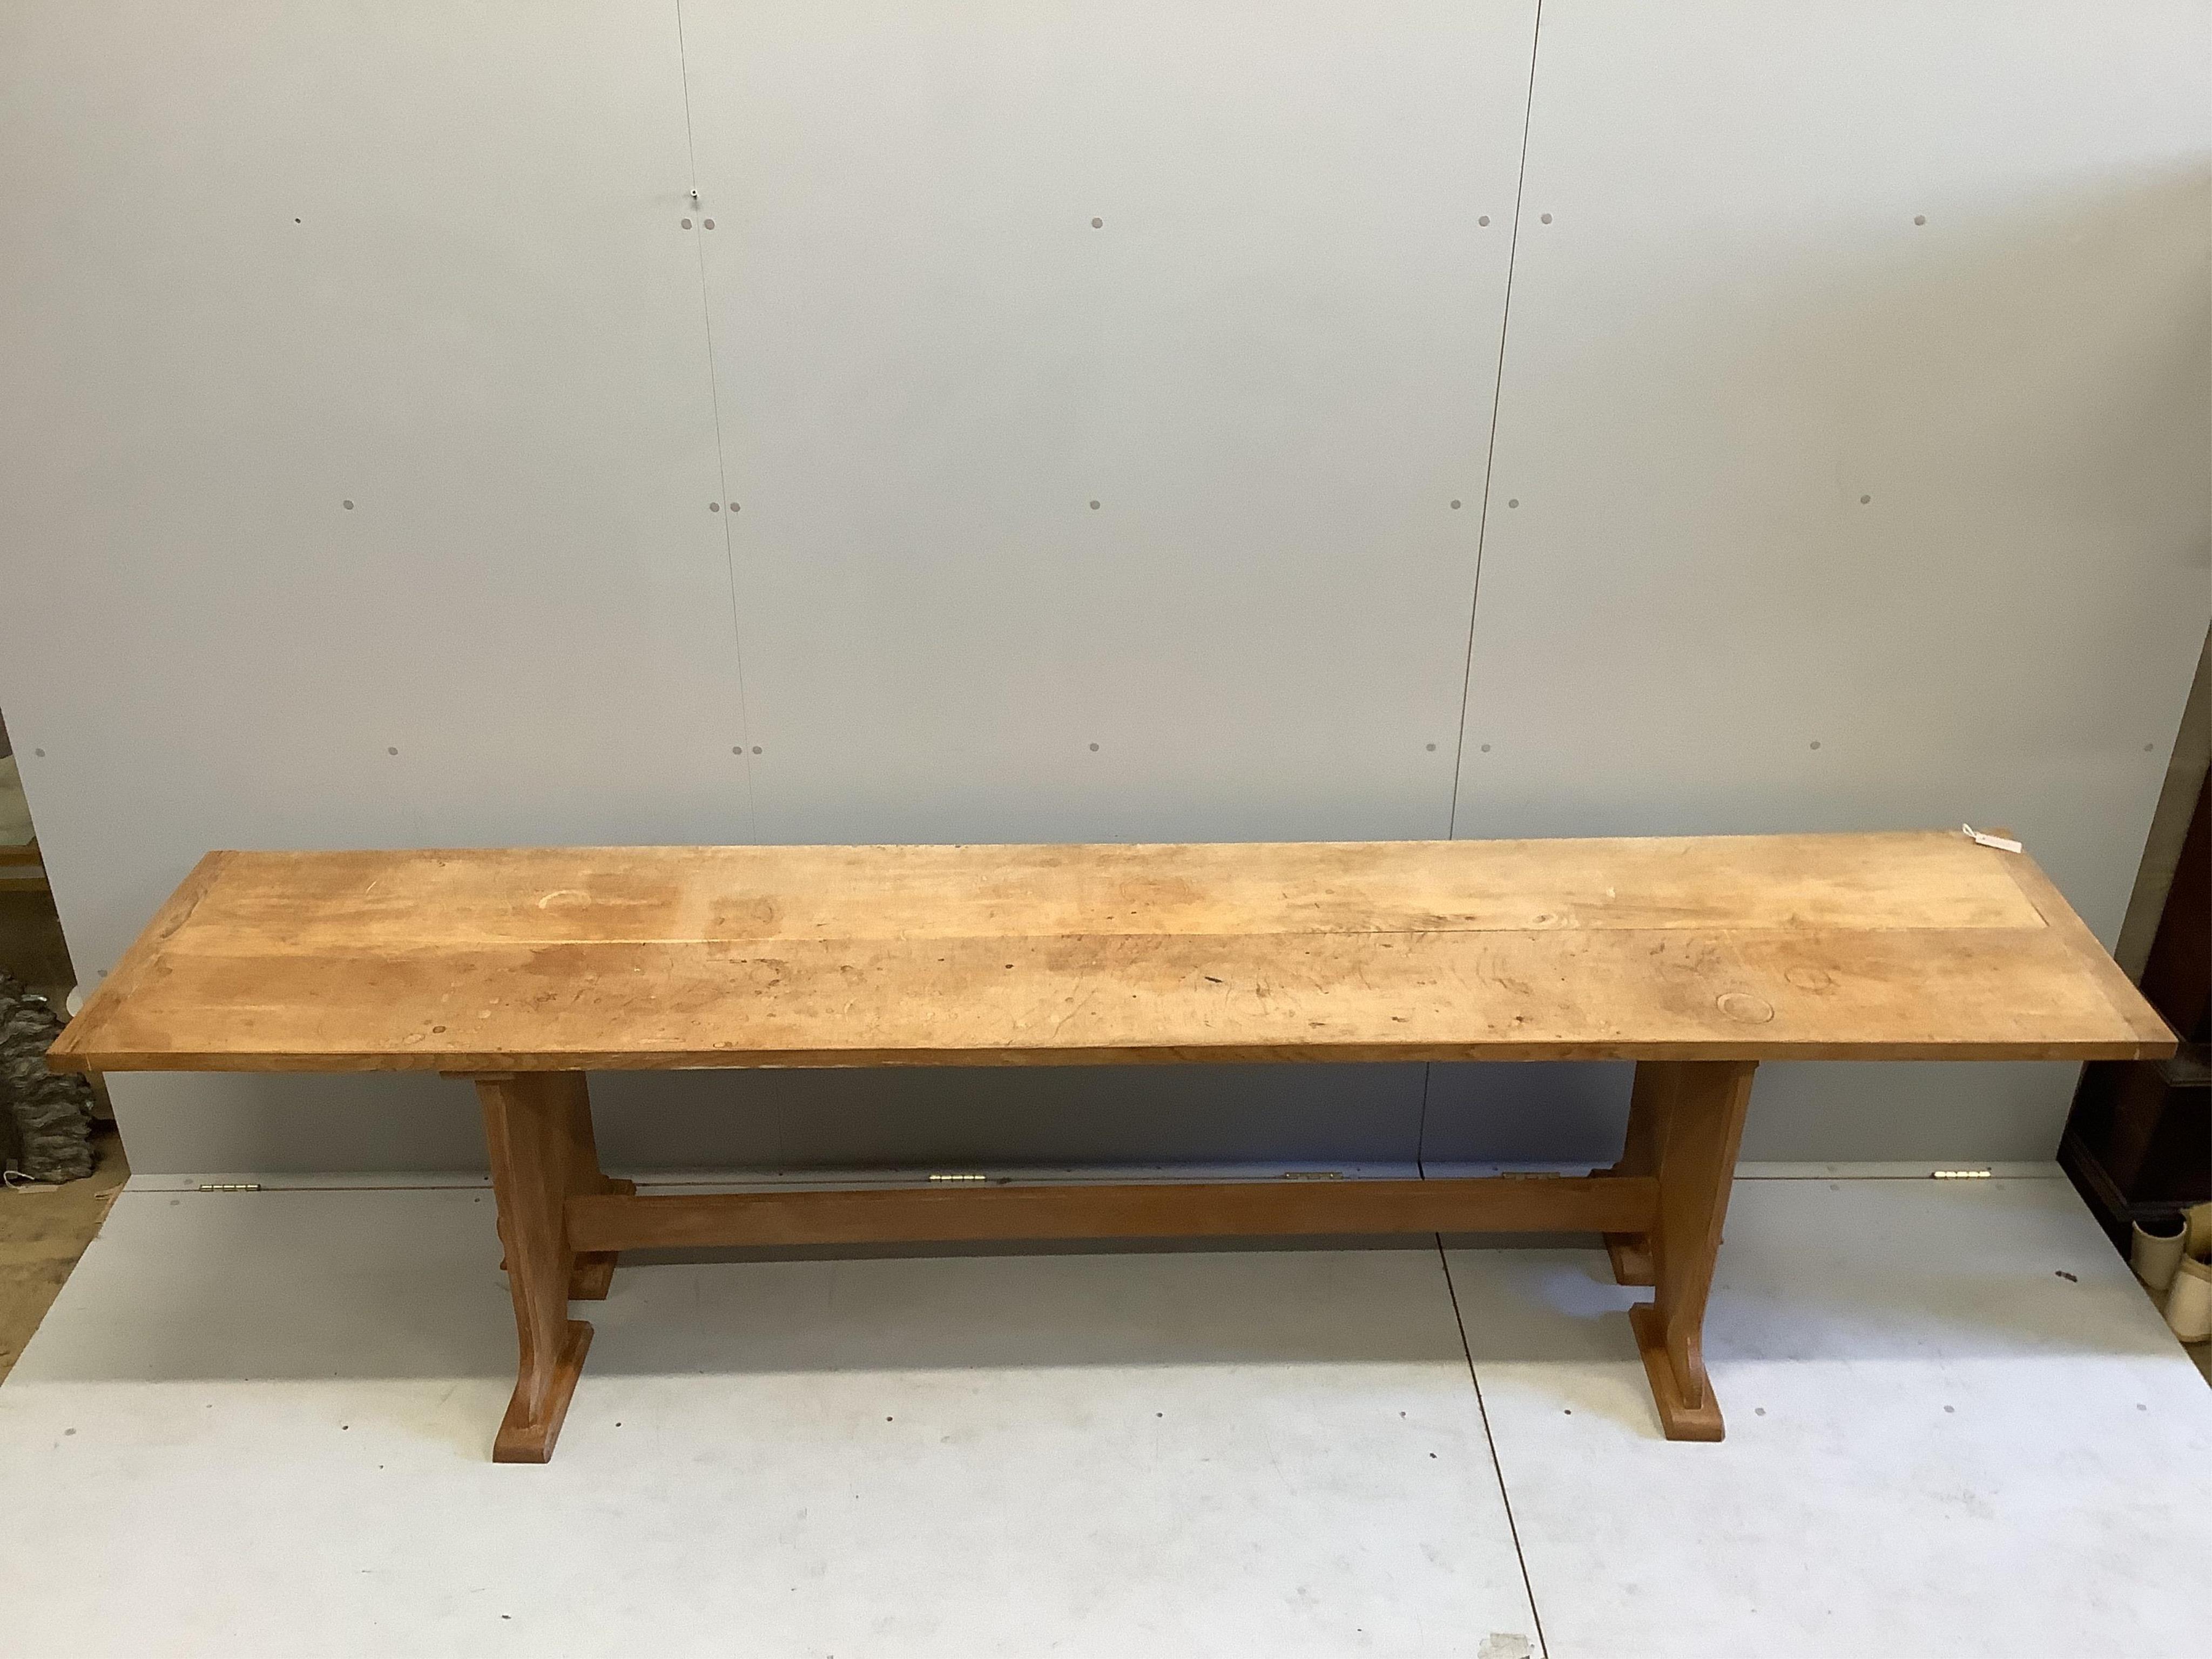 A bespoke oak narrow rectangular serving table, width 302cm, depth 59cm, height 76cm